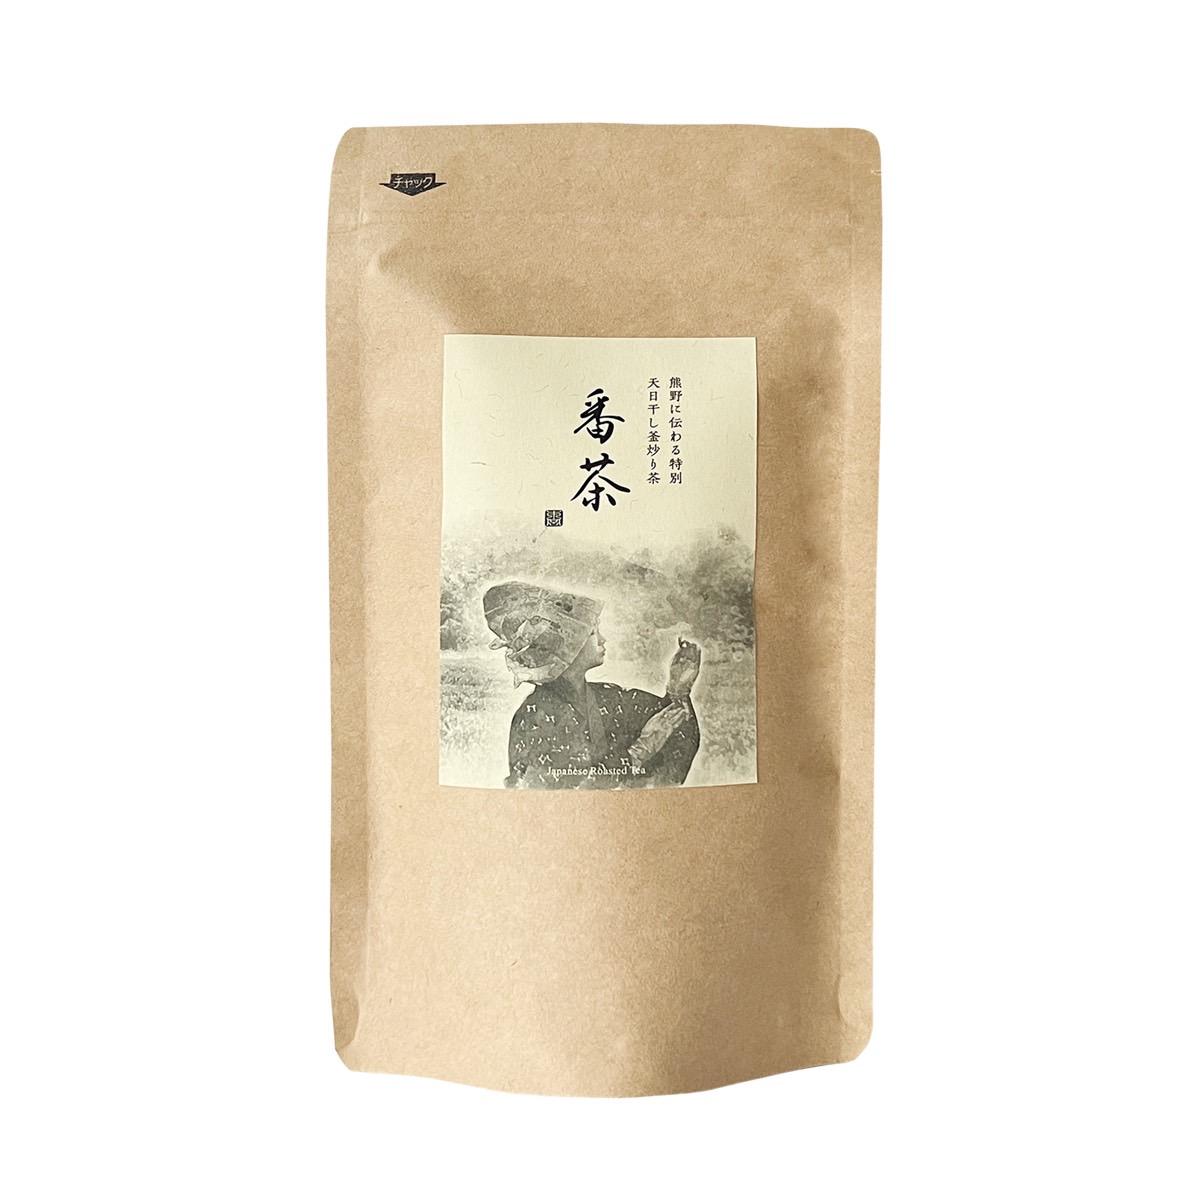 番茶(天日干し釜炒り茶)2